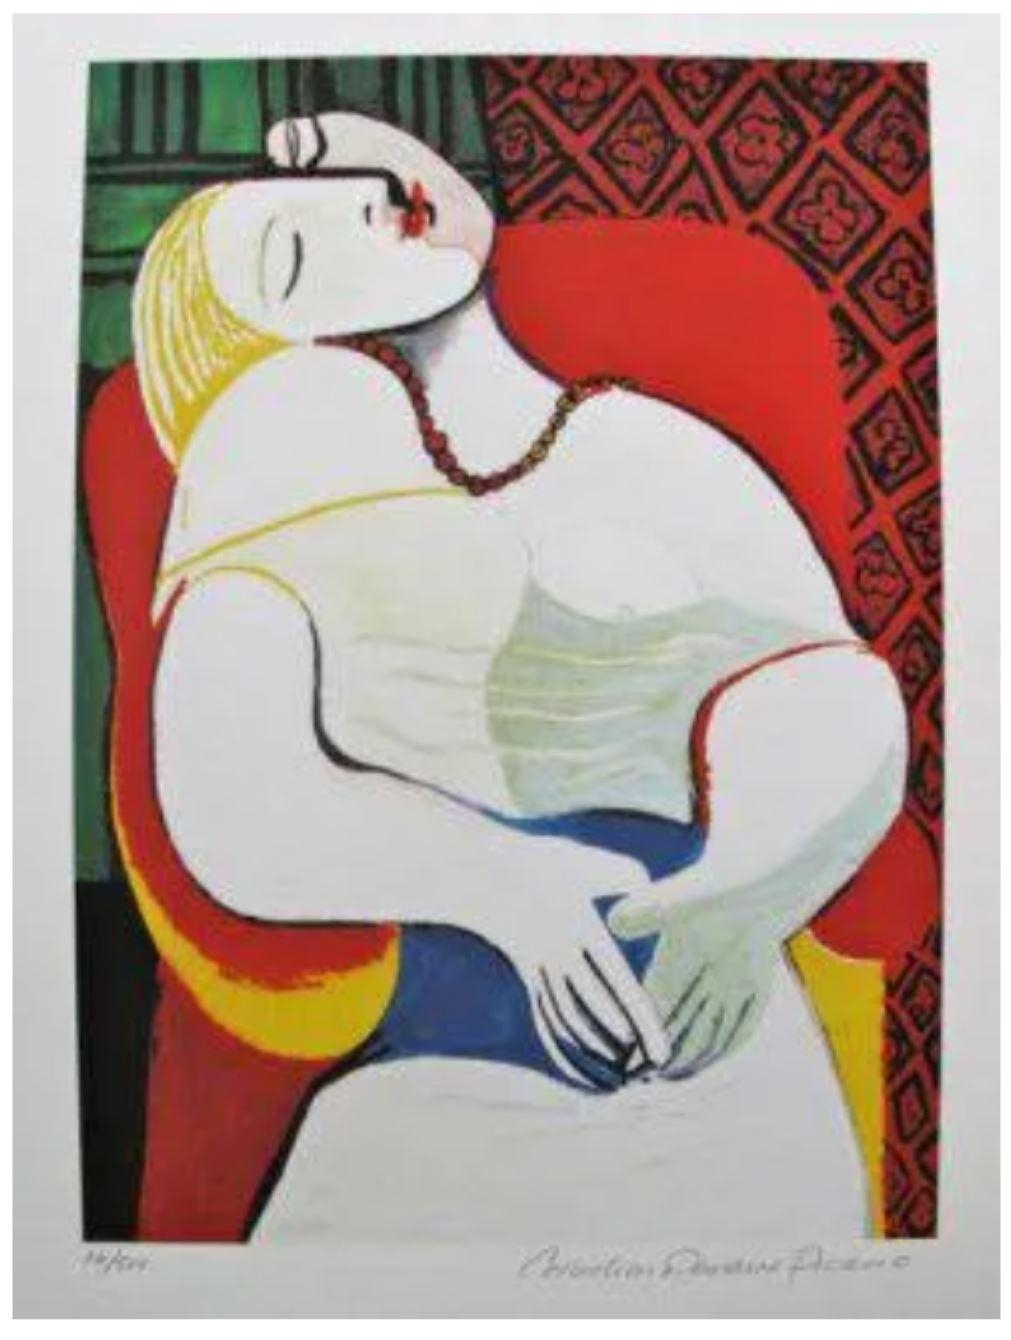 The Dream - Pablo Picasso